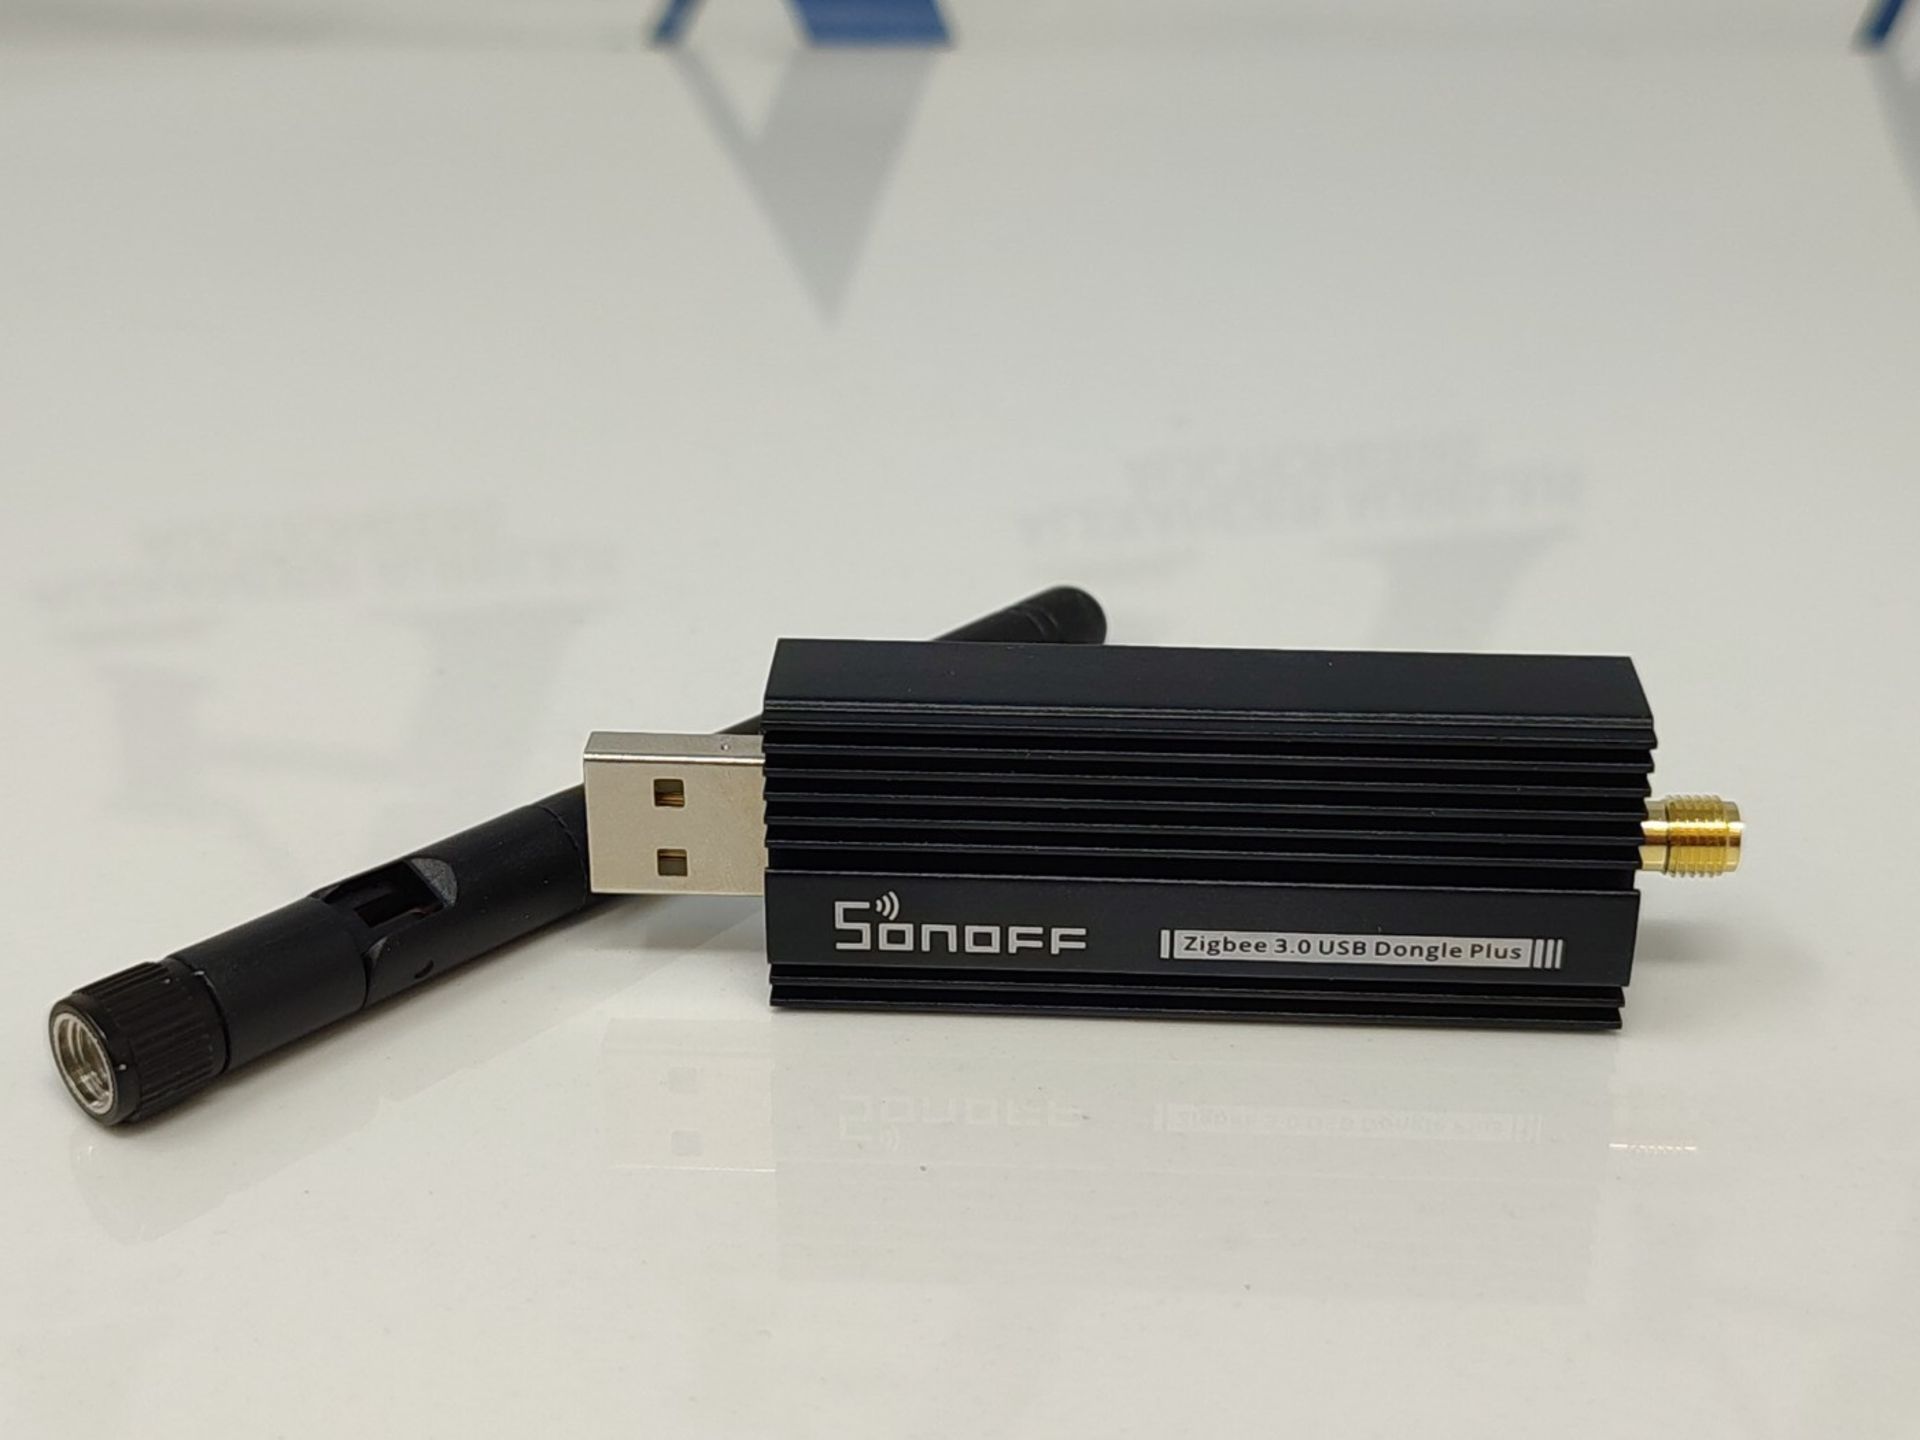 Zigbee Gateway, ZBDongle-E USB Zigbee 3.0 USB Dongle Plus, EFR32MG21 + CH9102F Zigbee - Image 4 of 4